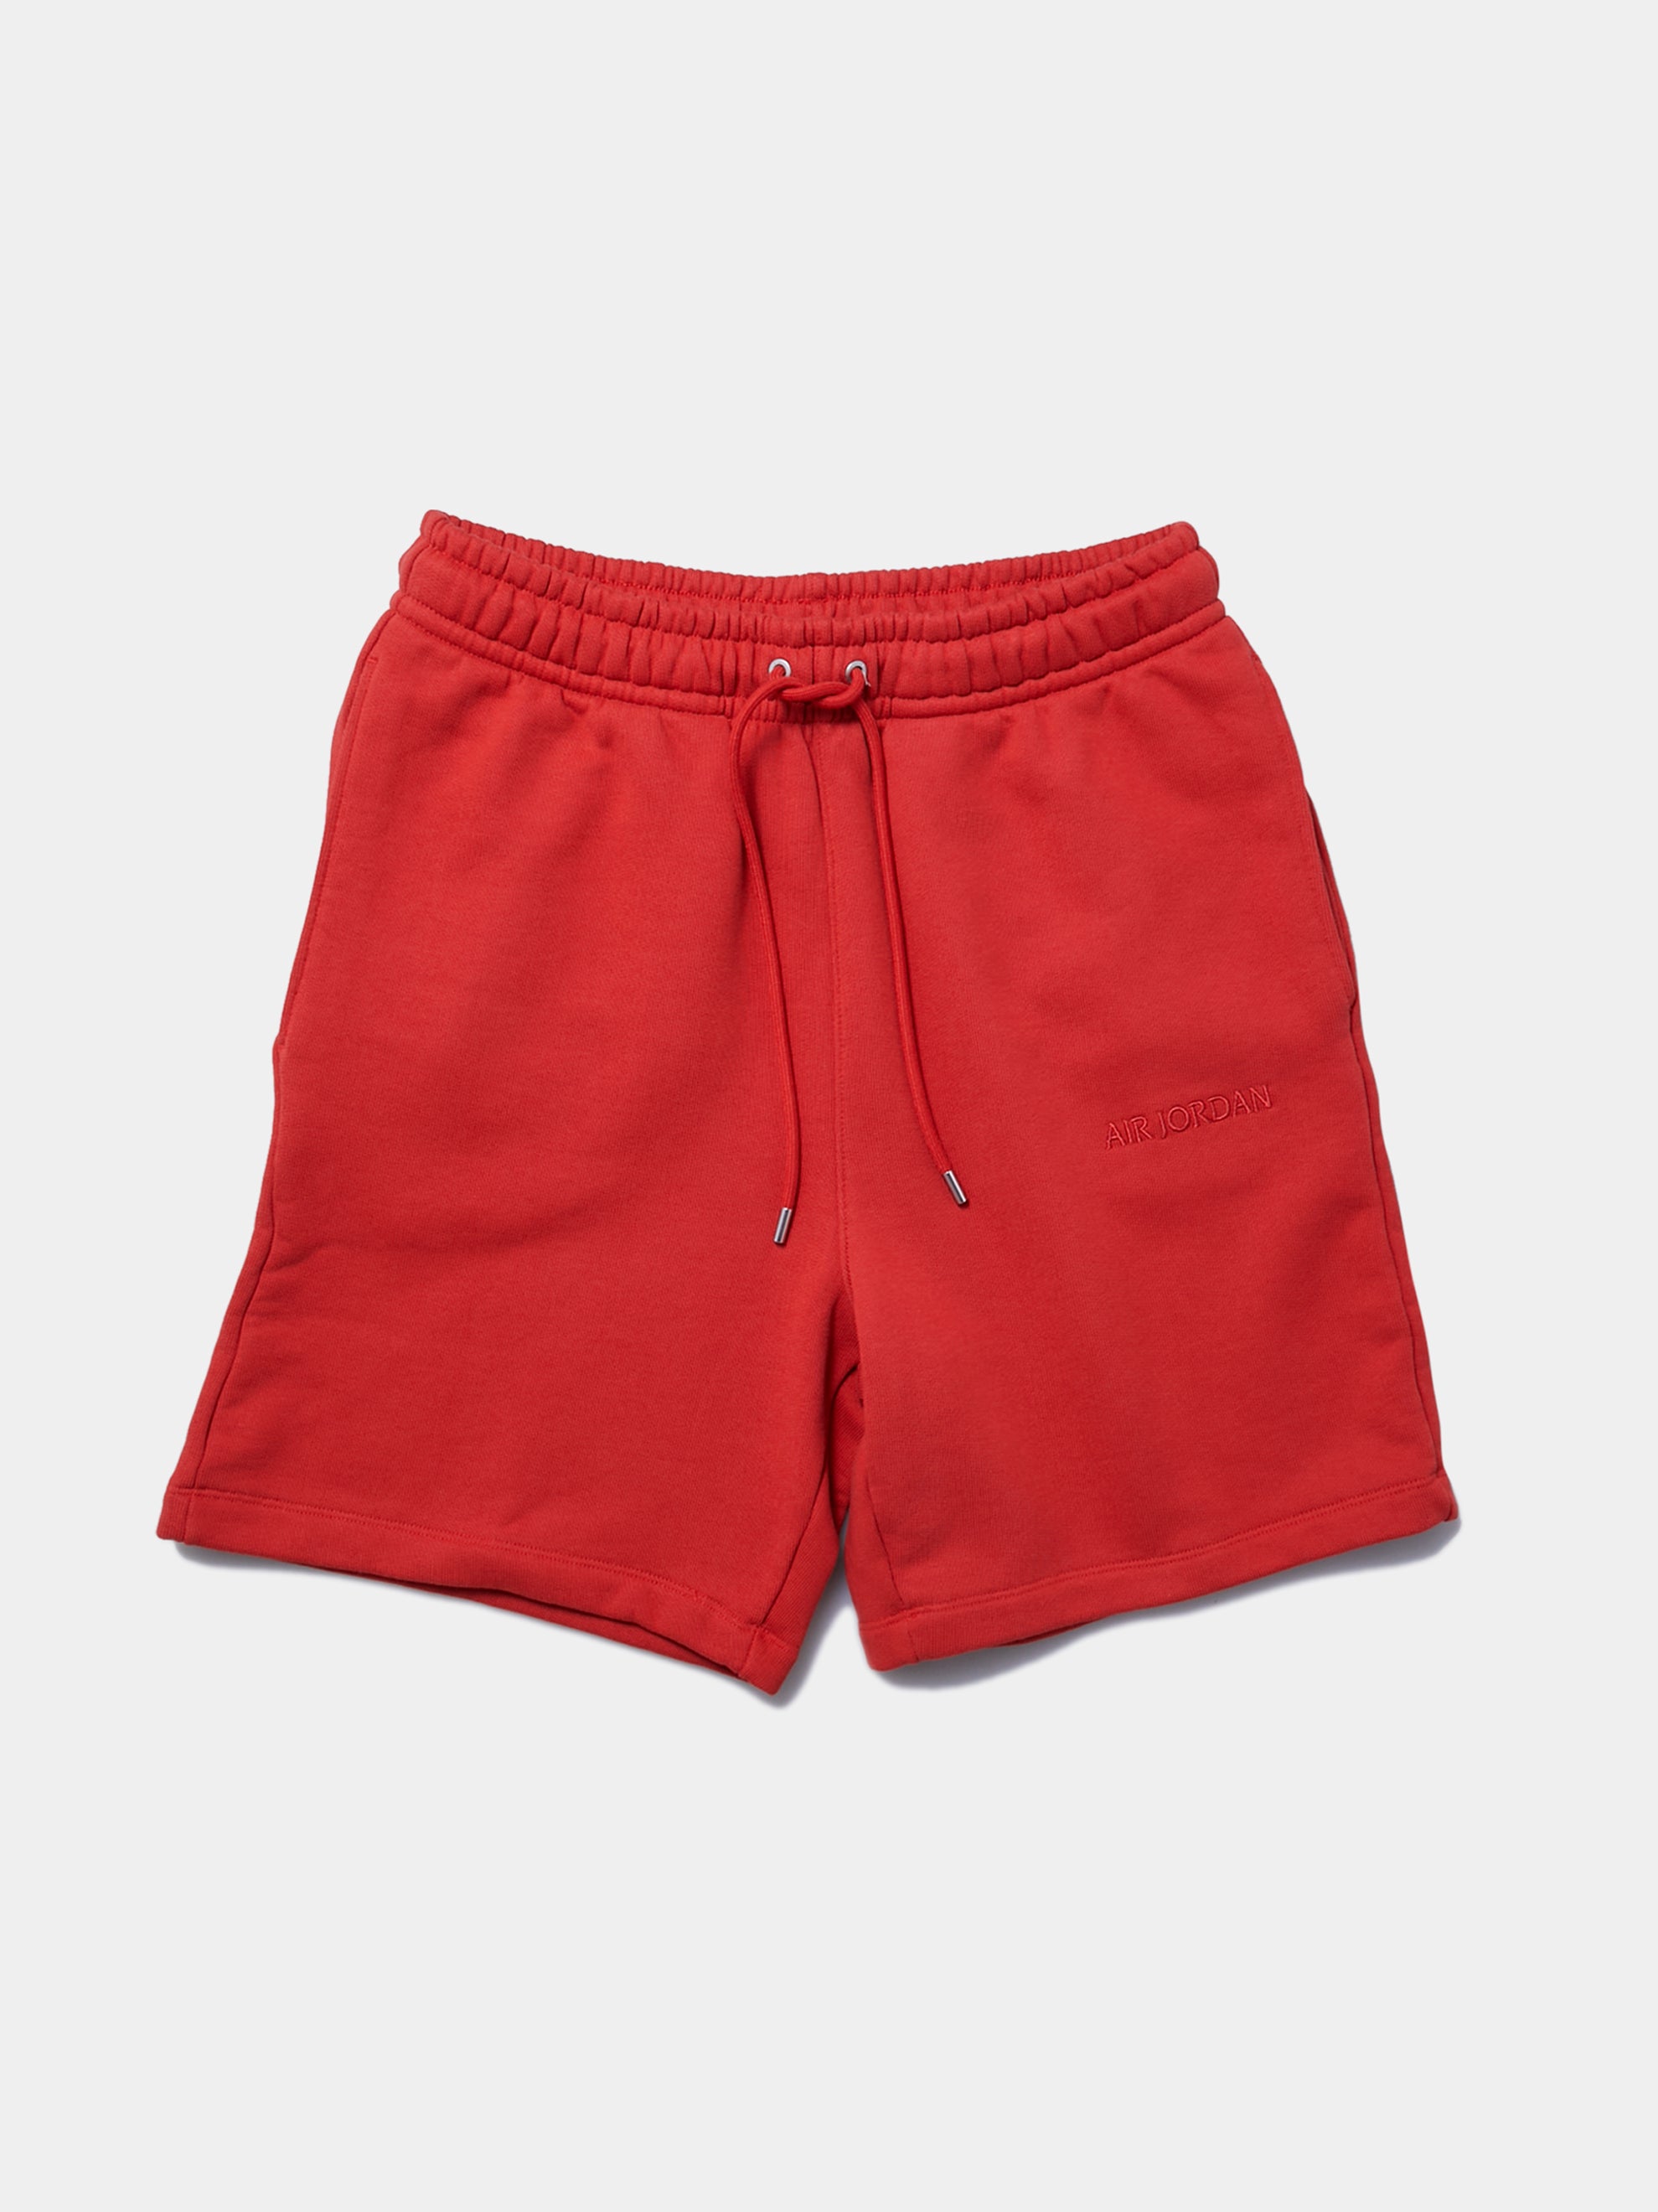 Air Jordan Wordmark Shorts (Mystic Red)